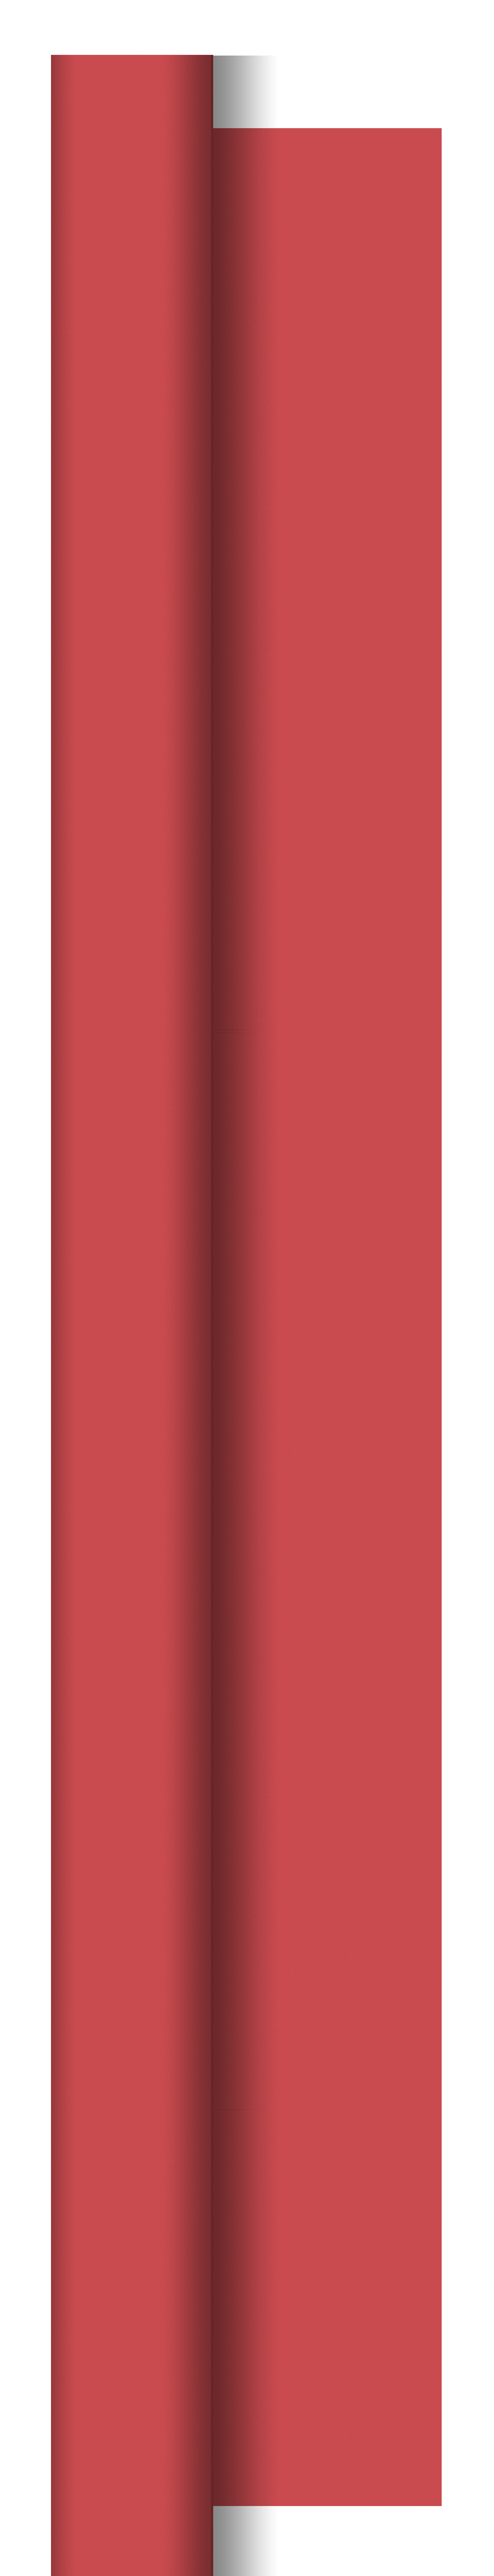 52488 Tafelrol rood uni 1,18x25mtr. 2x1 st